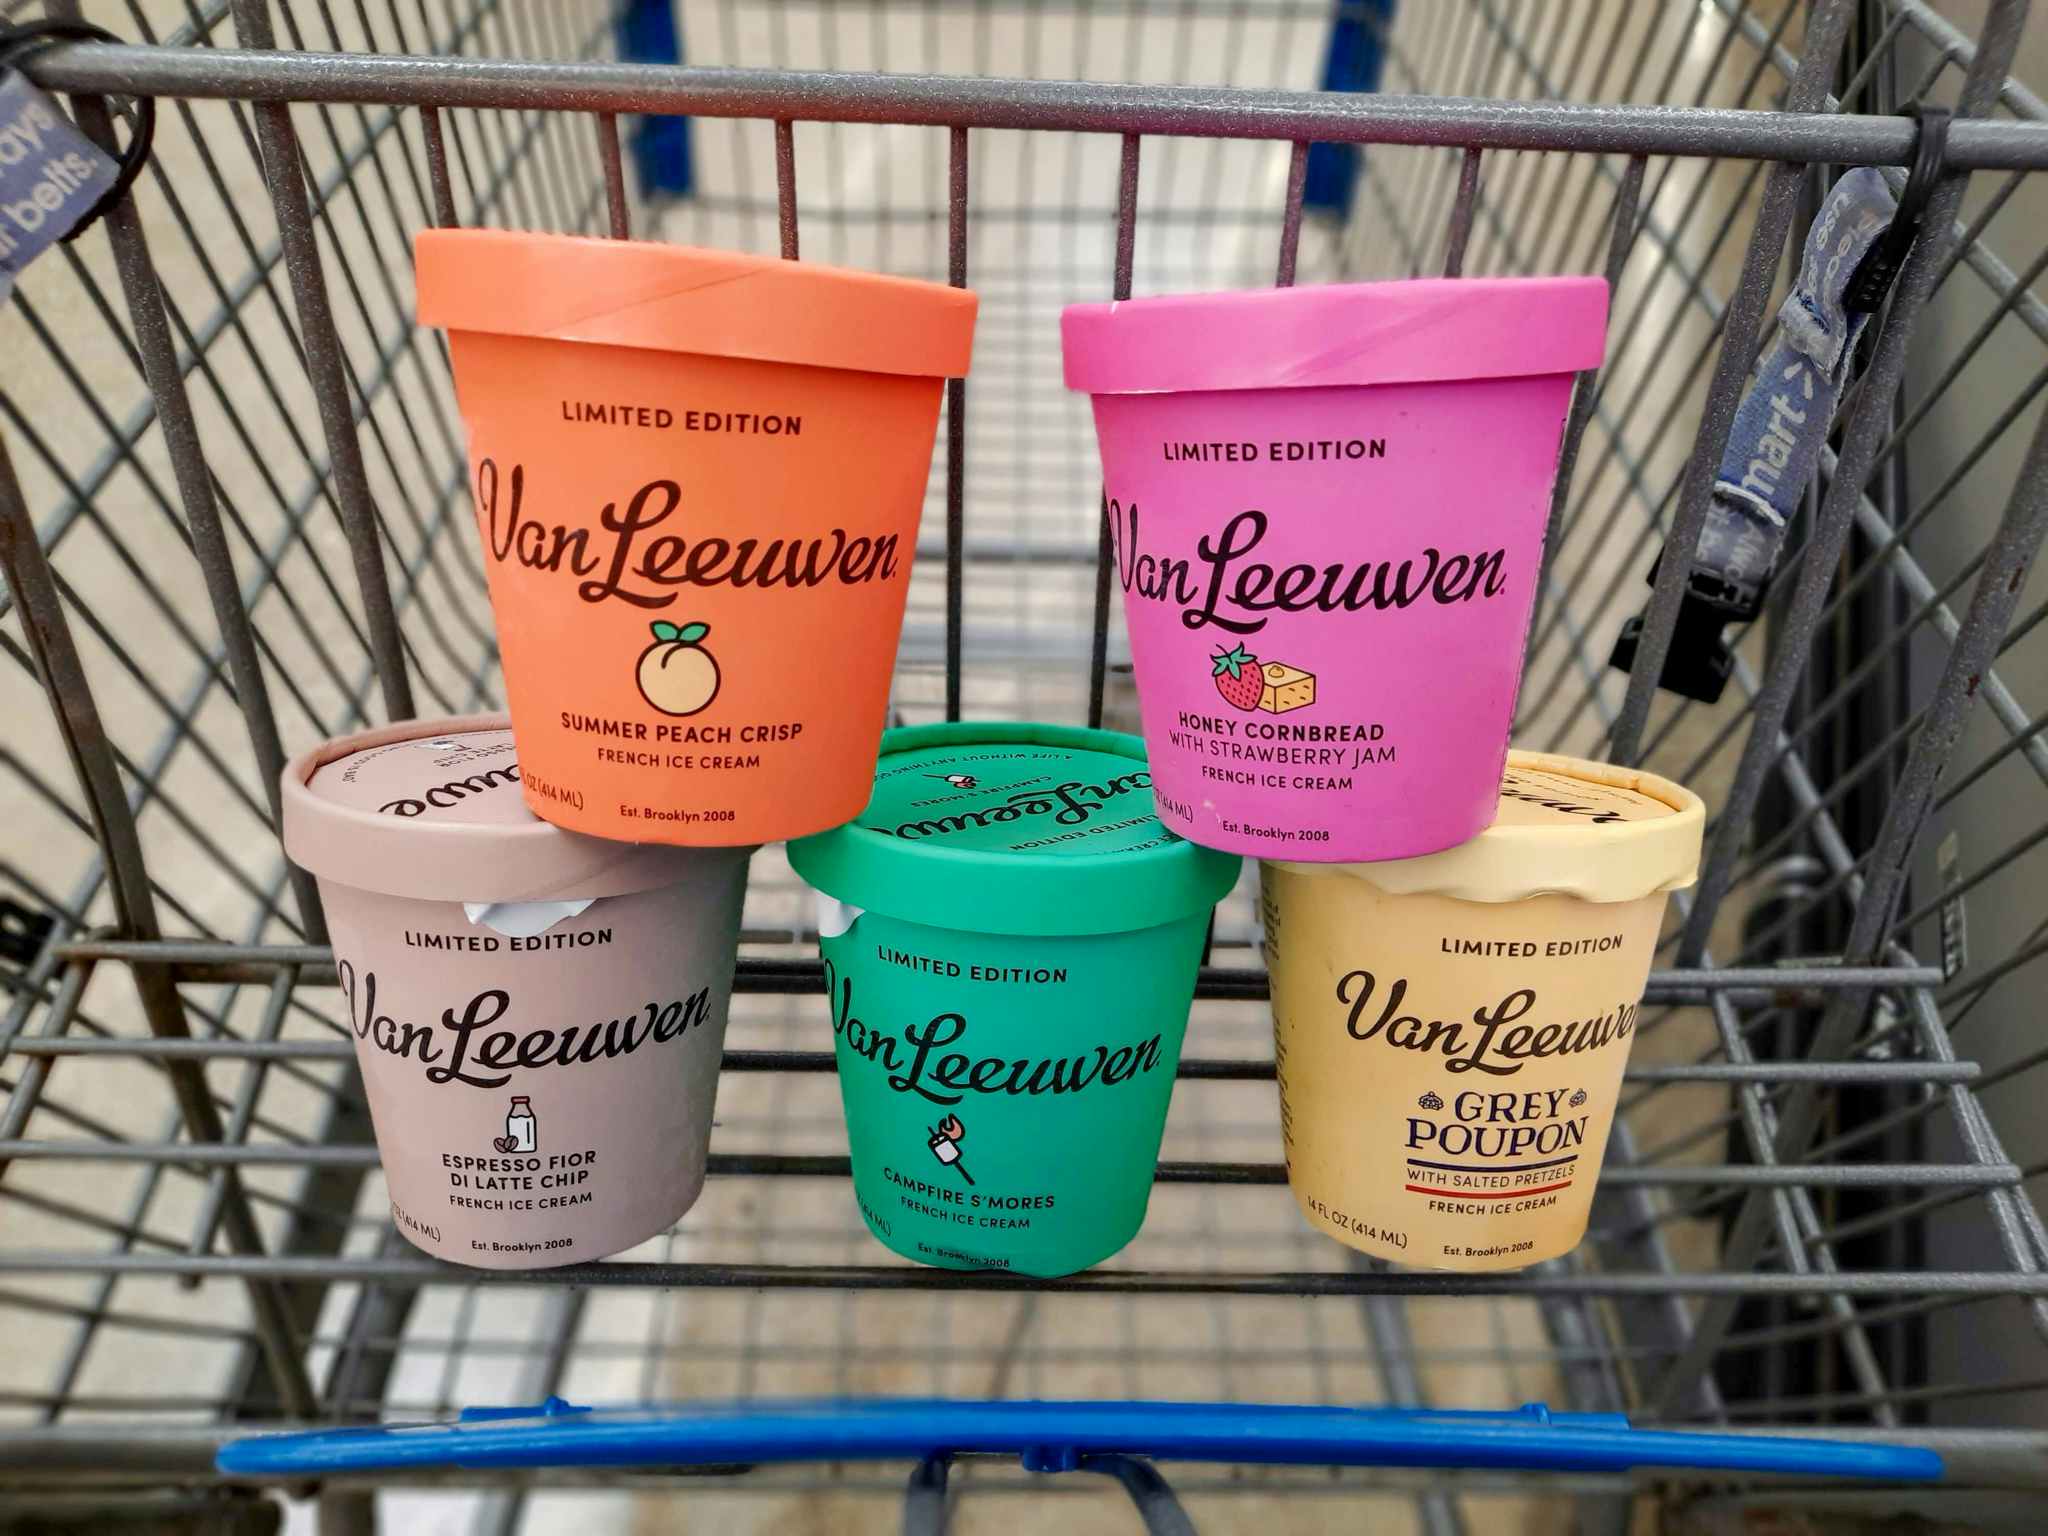 van leeuwen french ice cream in walmart cart